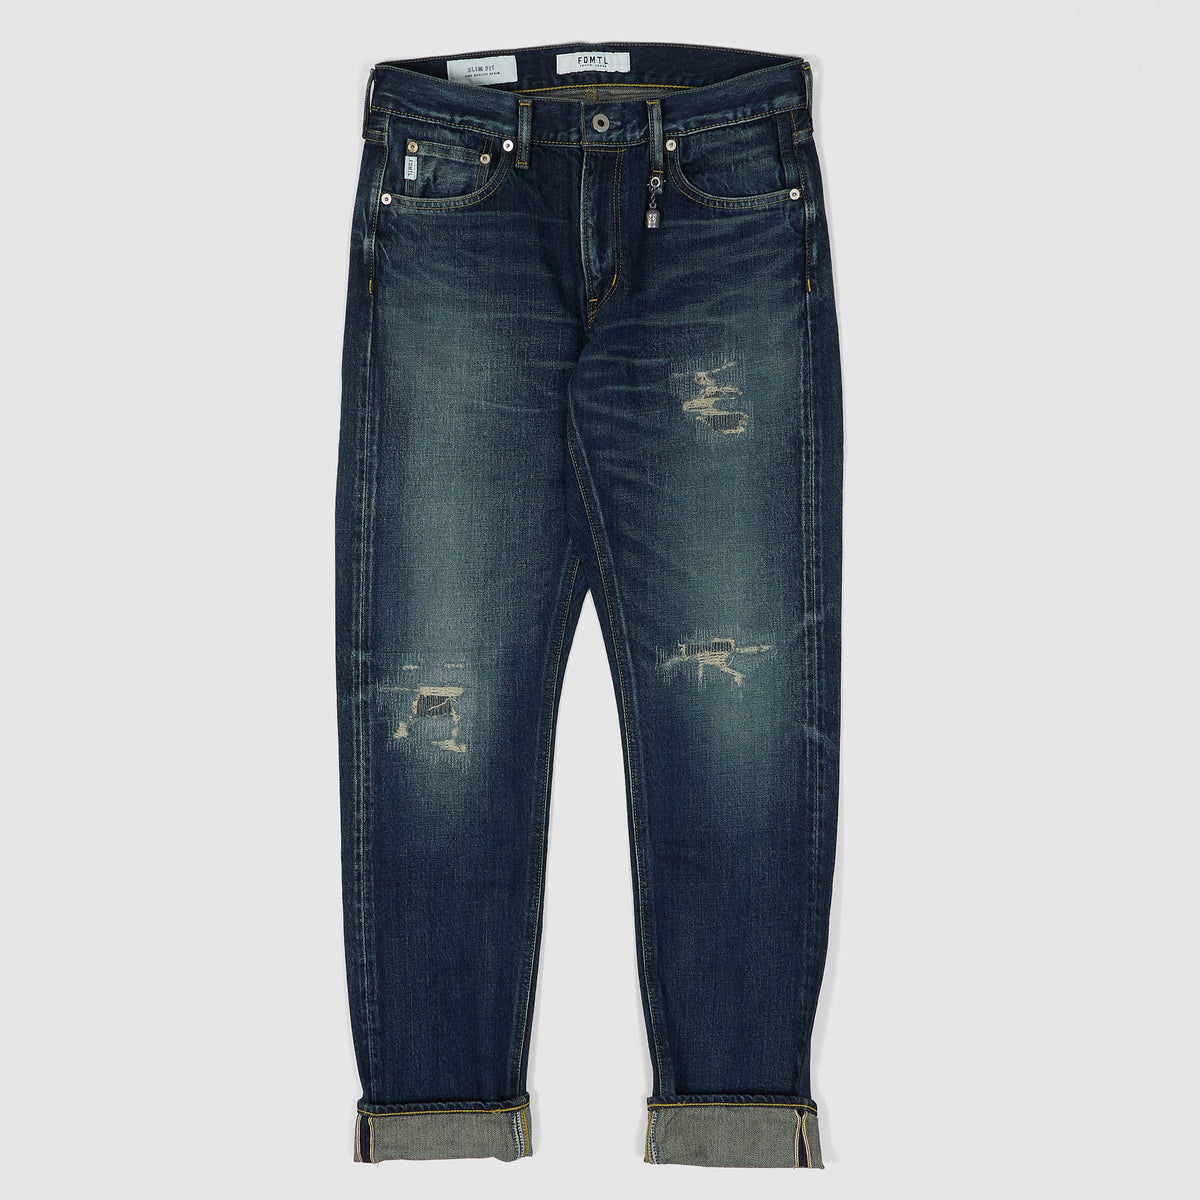 FDMTL Slim Fitted Straight Denim Hard Vintage Washed 5 Pocket Selvage Jeans